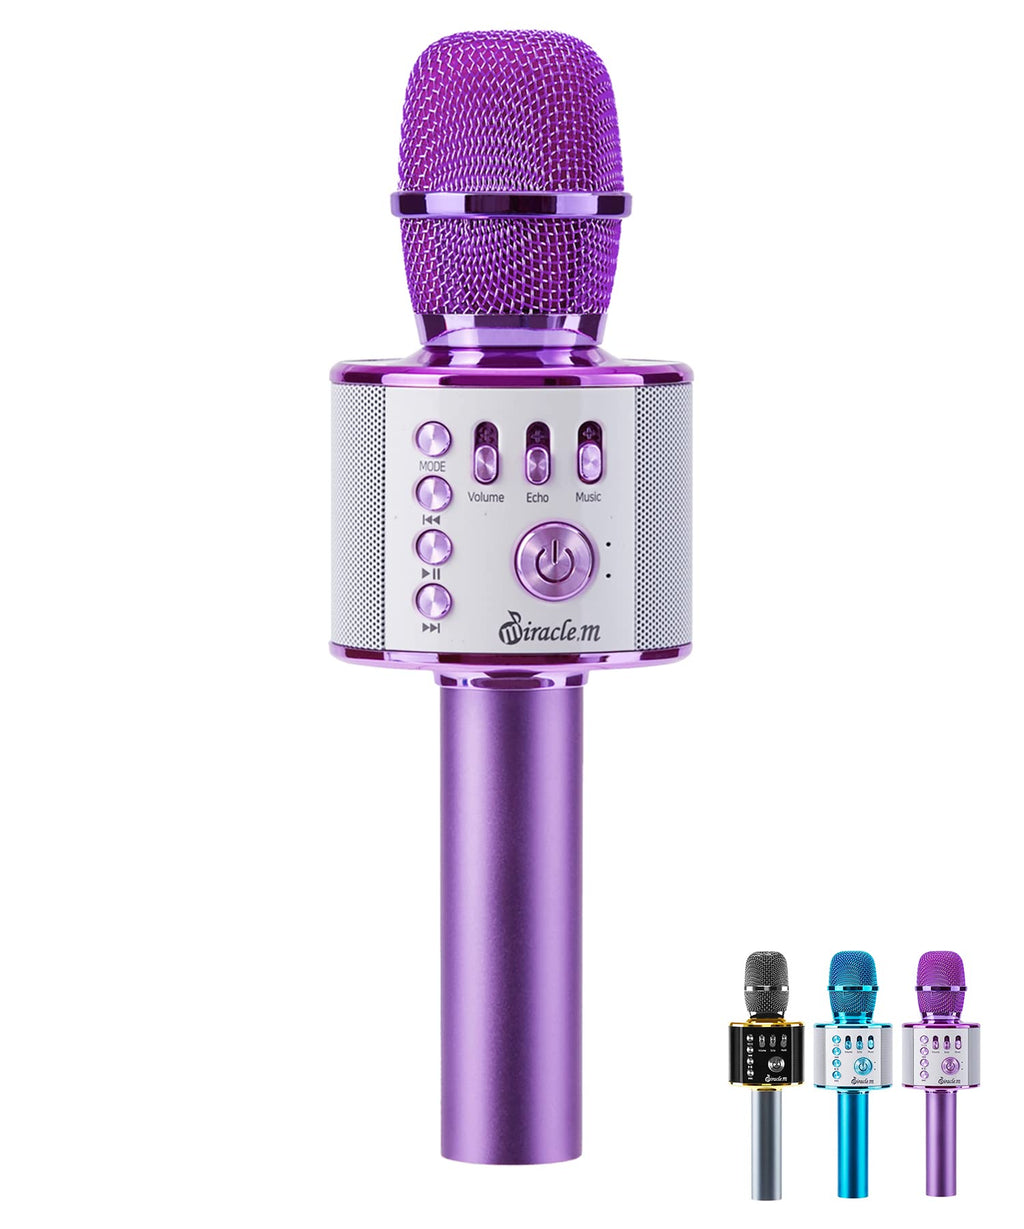 M37 - Bluetooth Karaoke Microphone Wireless - Bluetooth Microphone Wireless - Wireless Microphone Karaoke - Microphone for Kids - Carpool car Karaoke Microphones with Speaker - Karaoke mic Purple